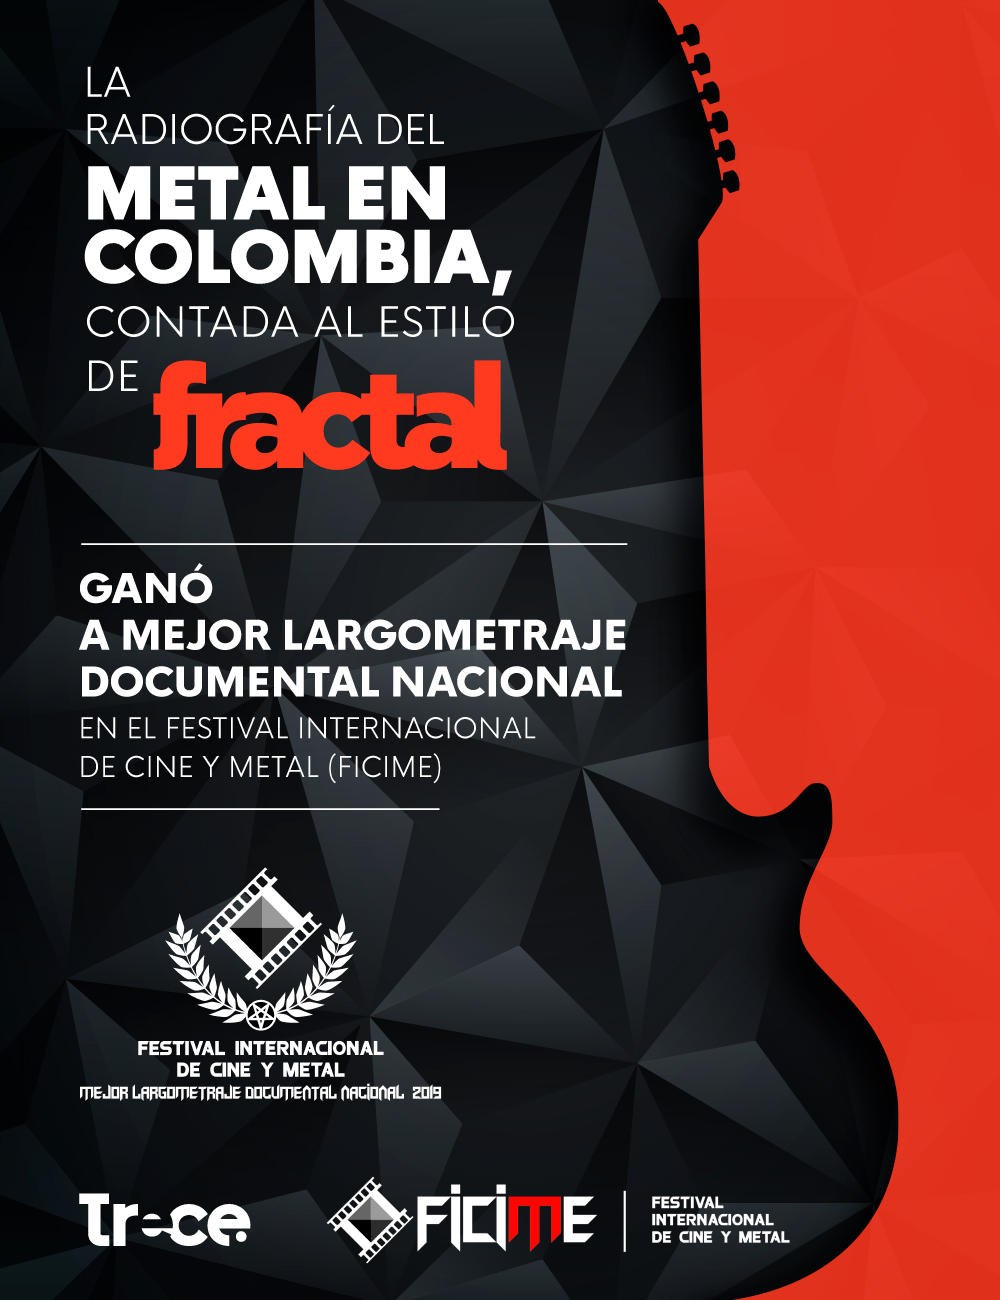 El Festival de Cine y Metal premió a Fractal por mejor largometraje documental nacional.